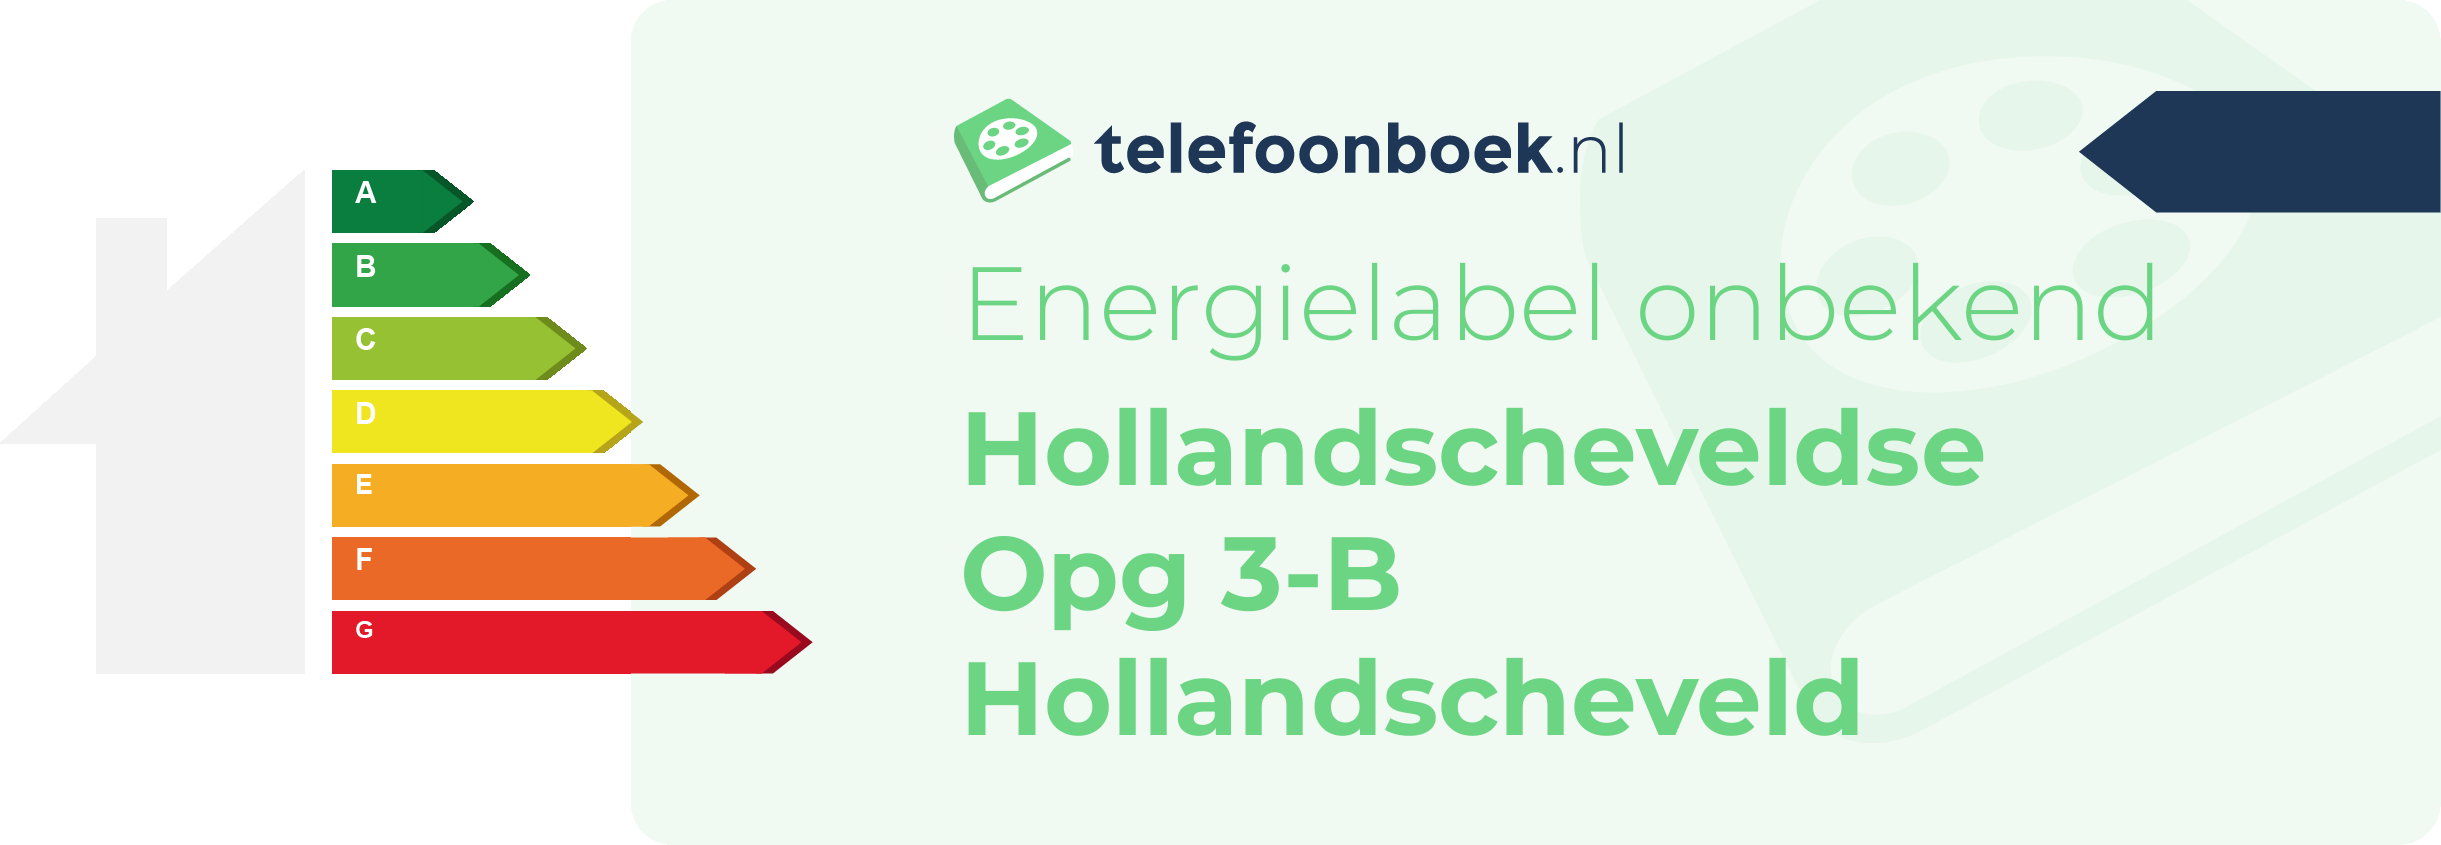 Energielabel Hollandscheveldse Opg 3-B Hollandscheveld